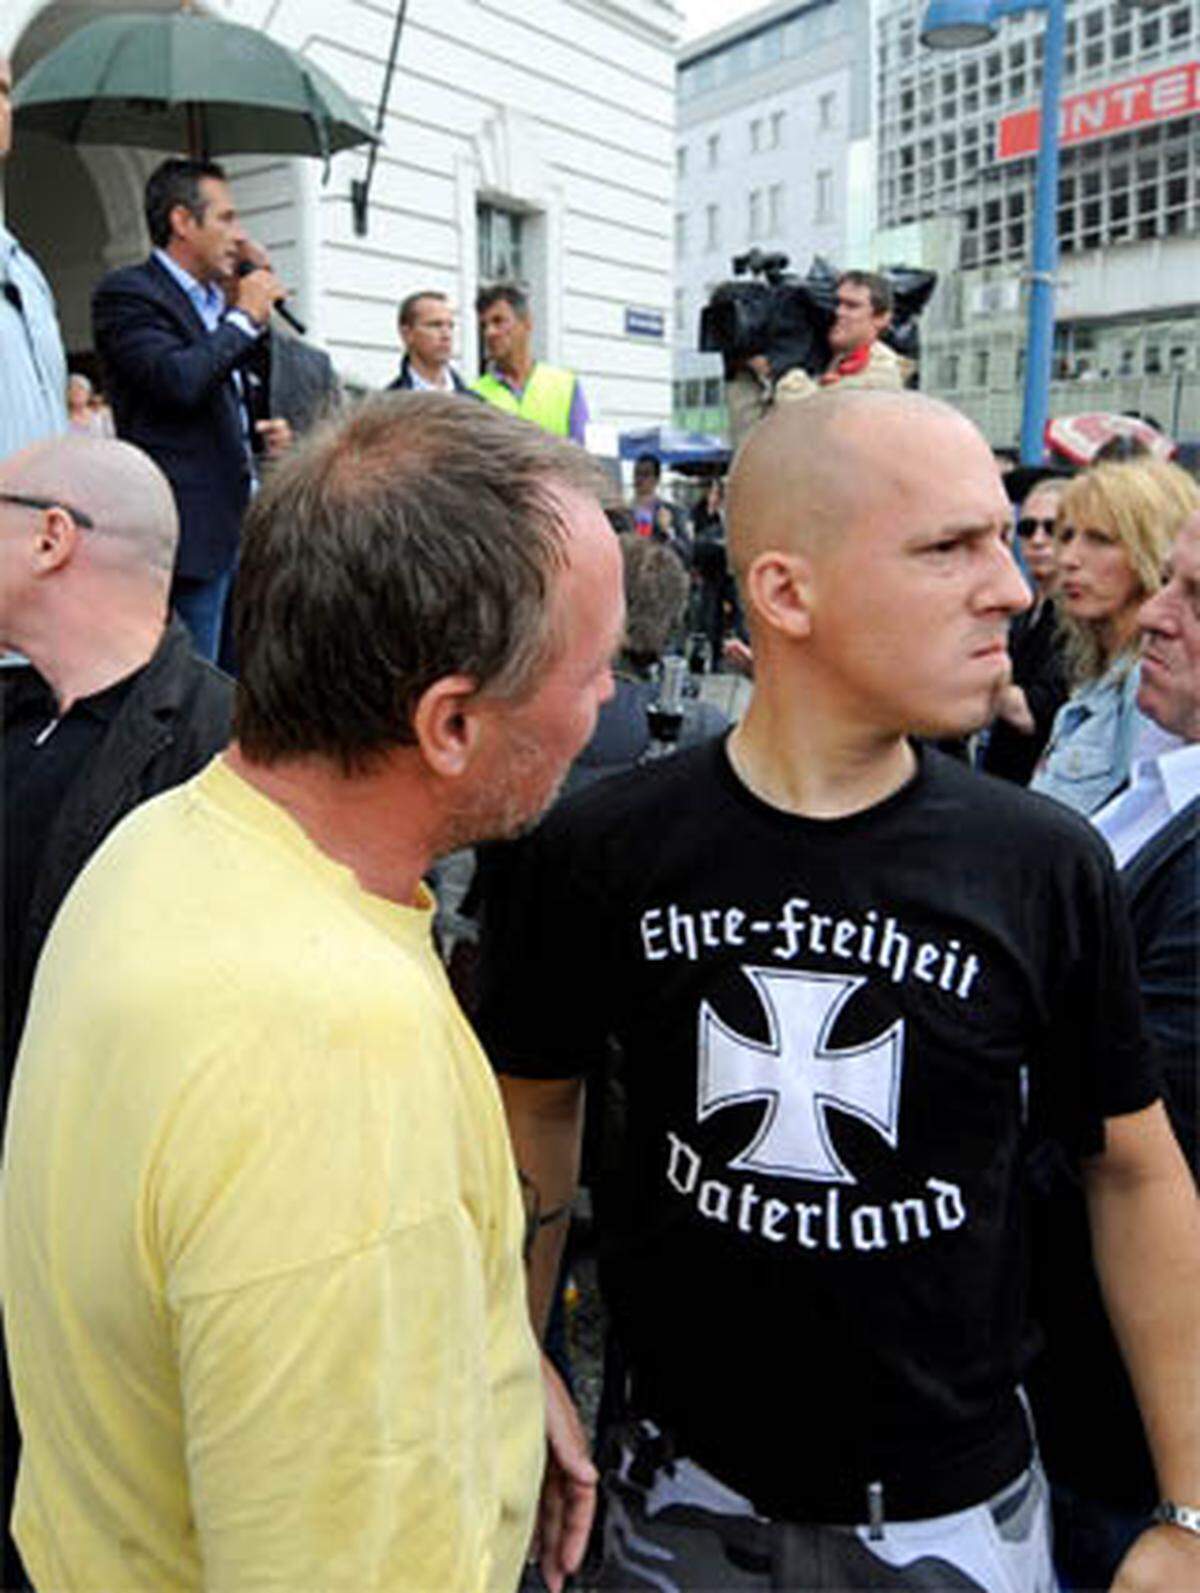 "Wir sind keine Nazis und Rechtsextremisten, sondern aufrechte Demokraten", betont der FPÖ-Chef, während die Gegen-Demonstranten auf der Floridsdorfer Hauptstraße "Strache ist ein Faschist" rufen.